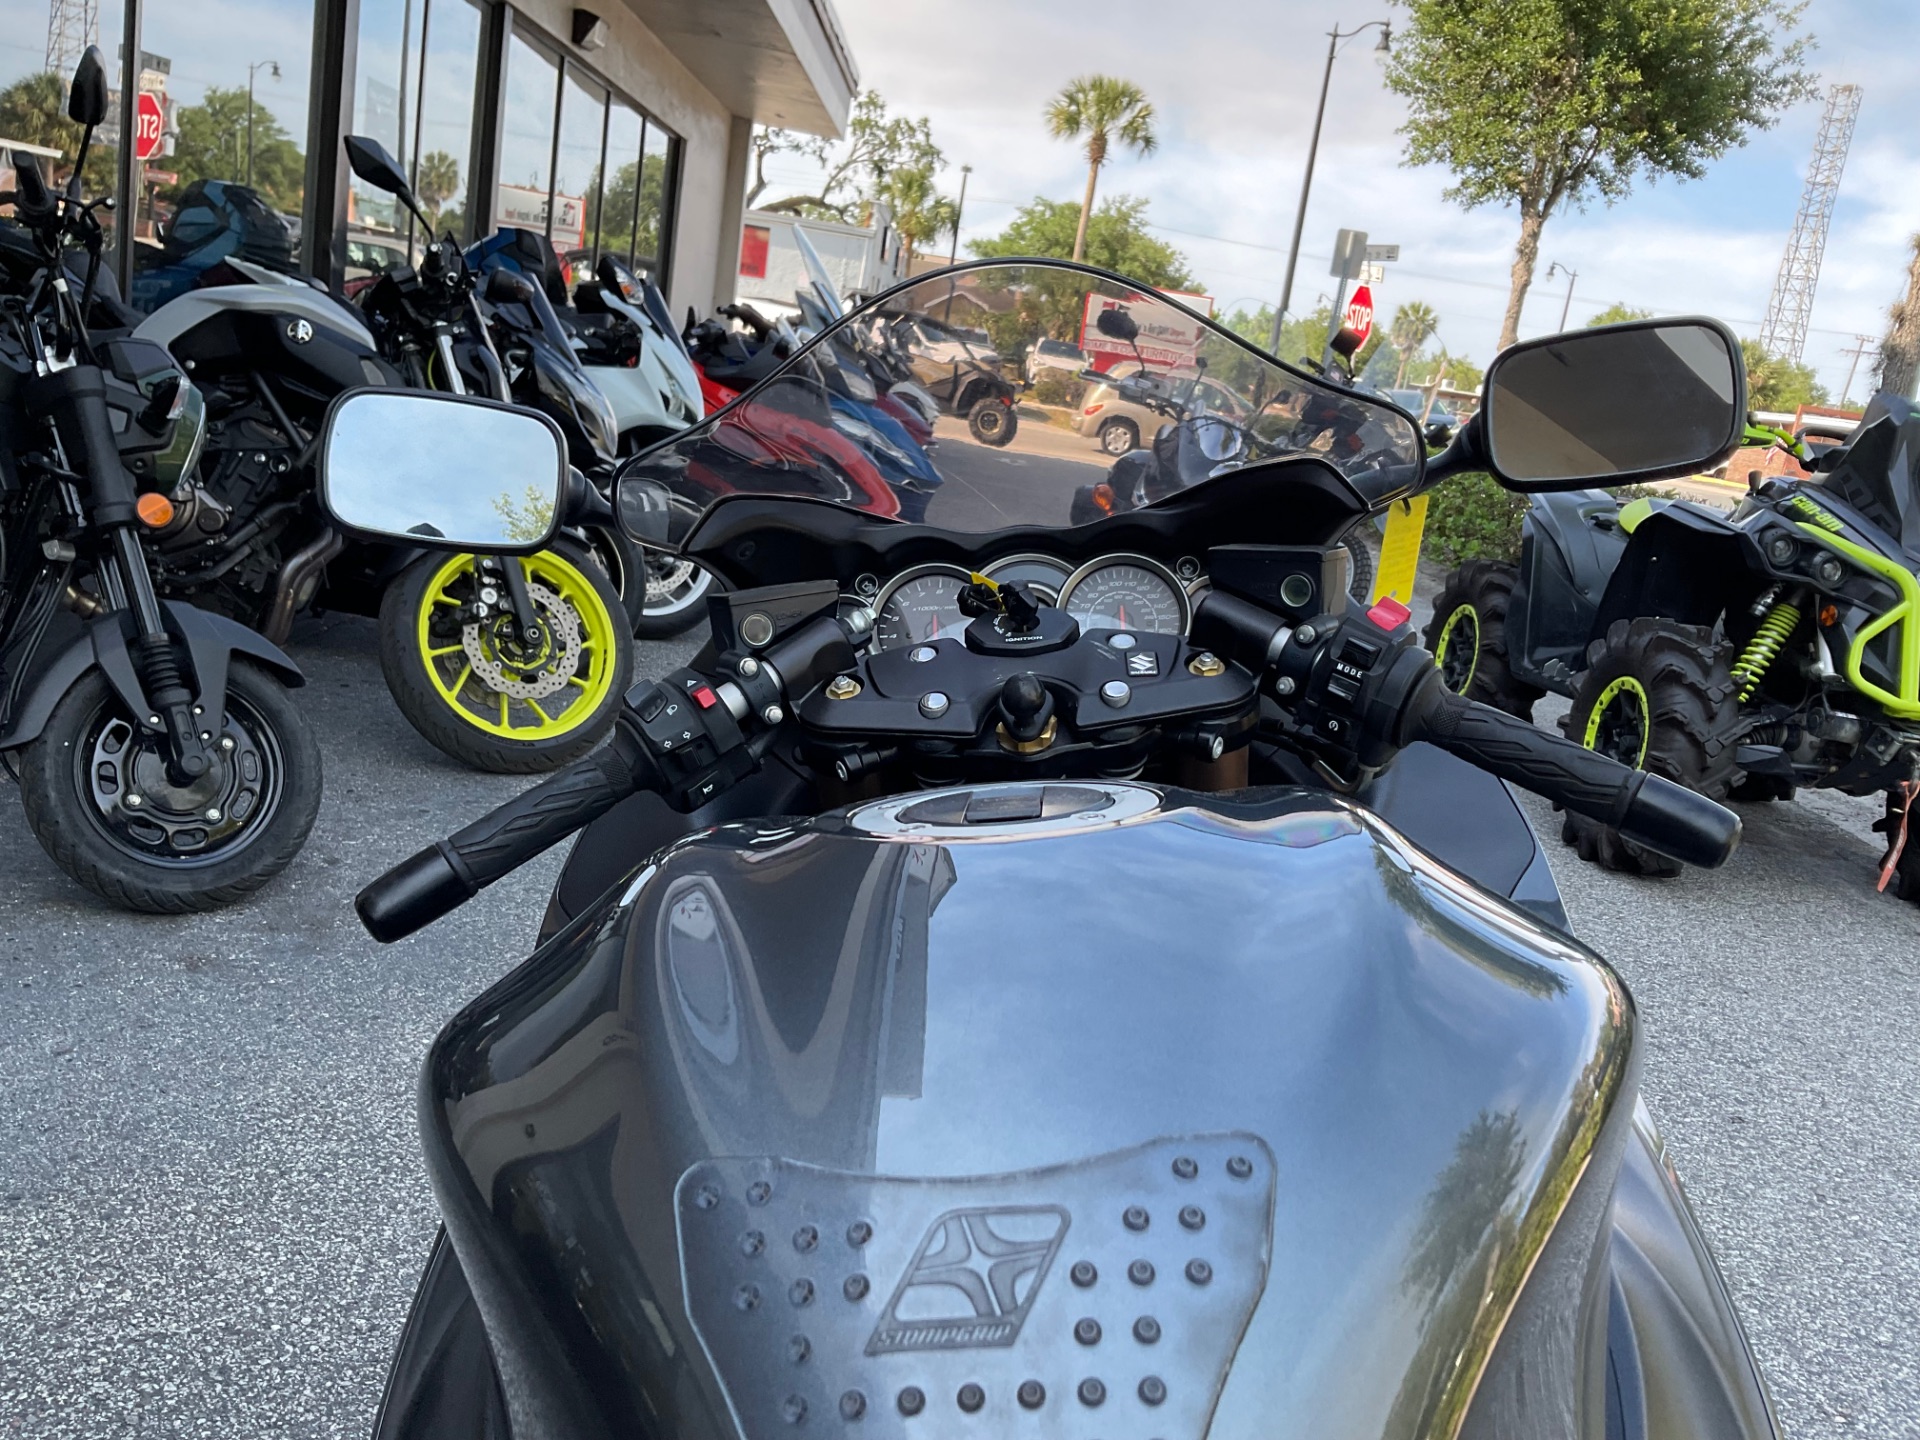 2020 Suzuki Hayabusa in Sanford, Florida - Photo 24